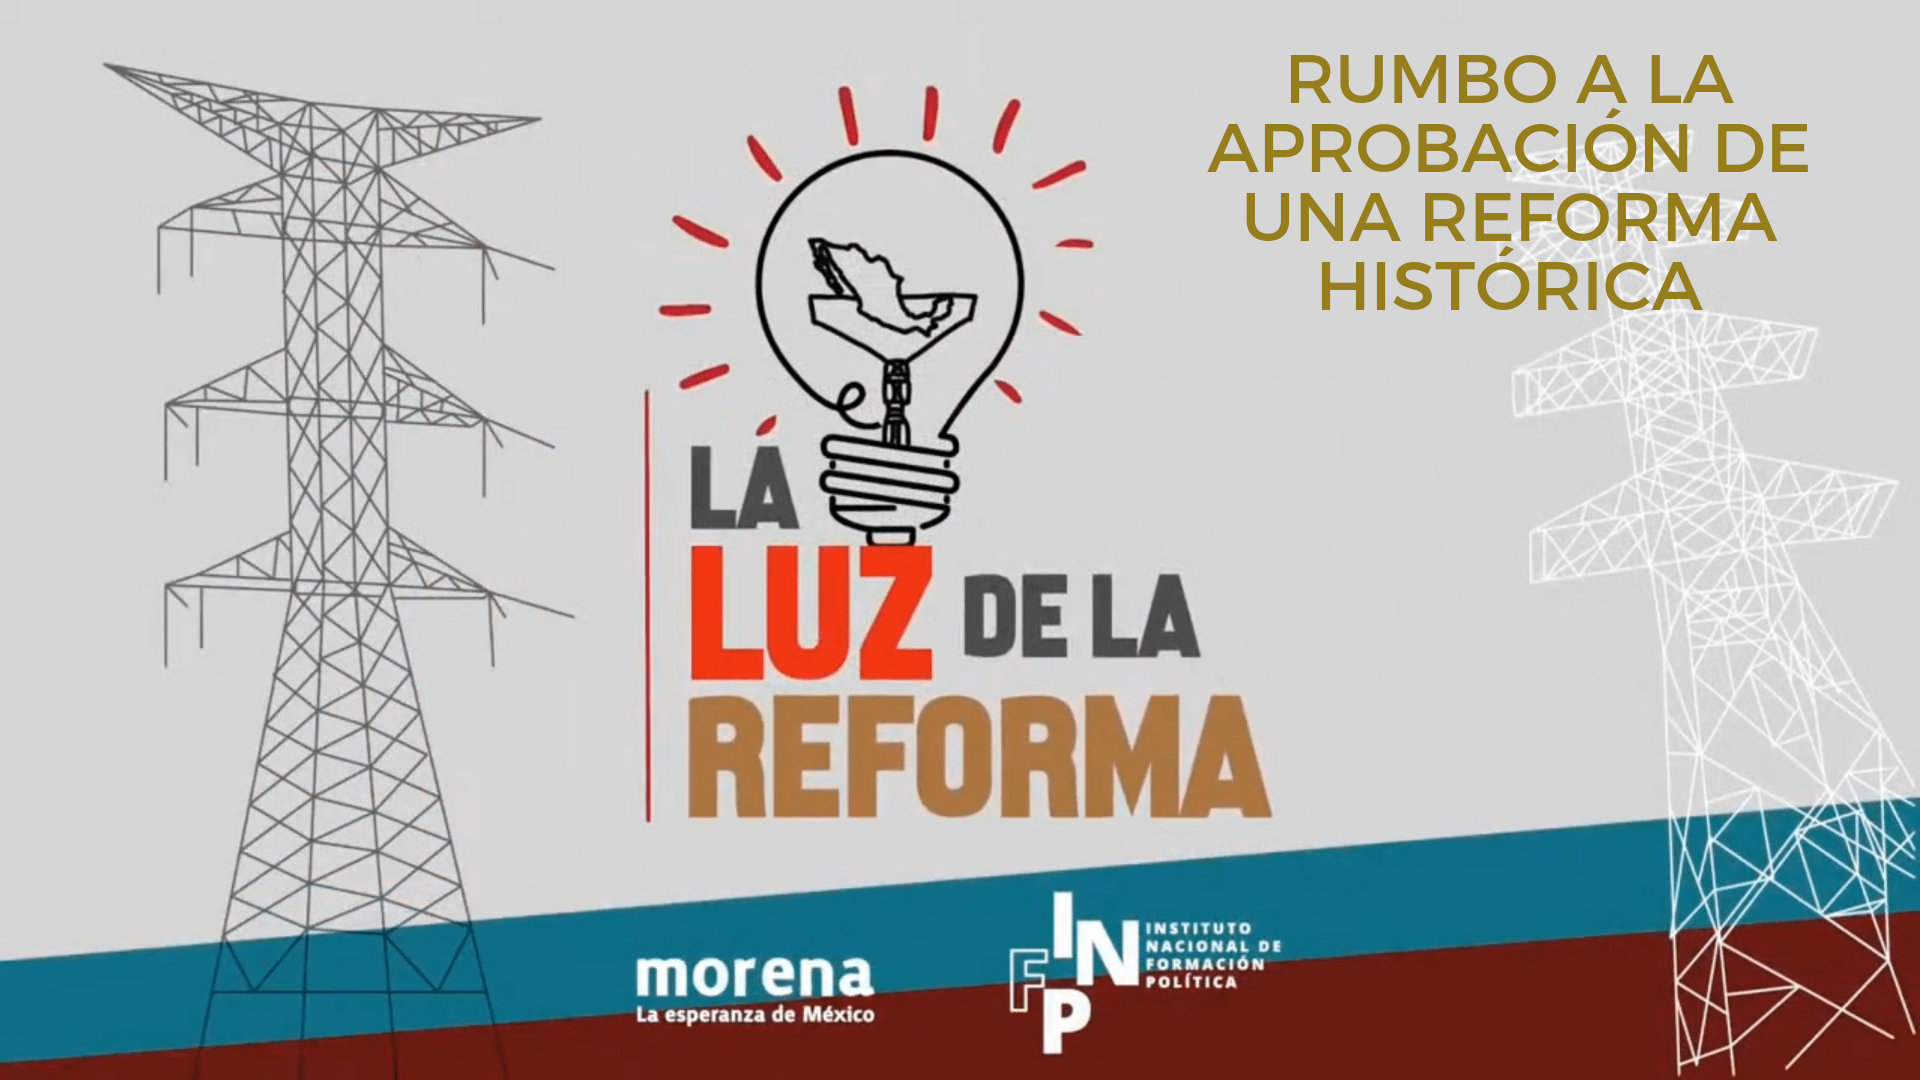 La luz de la Reforma – Rumbo a la aprobación de una reforma histórica